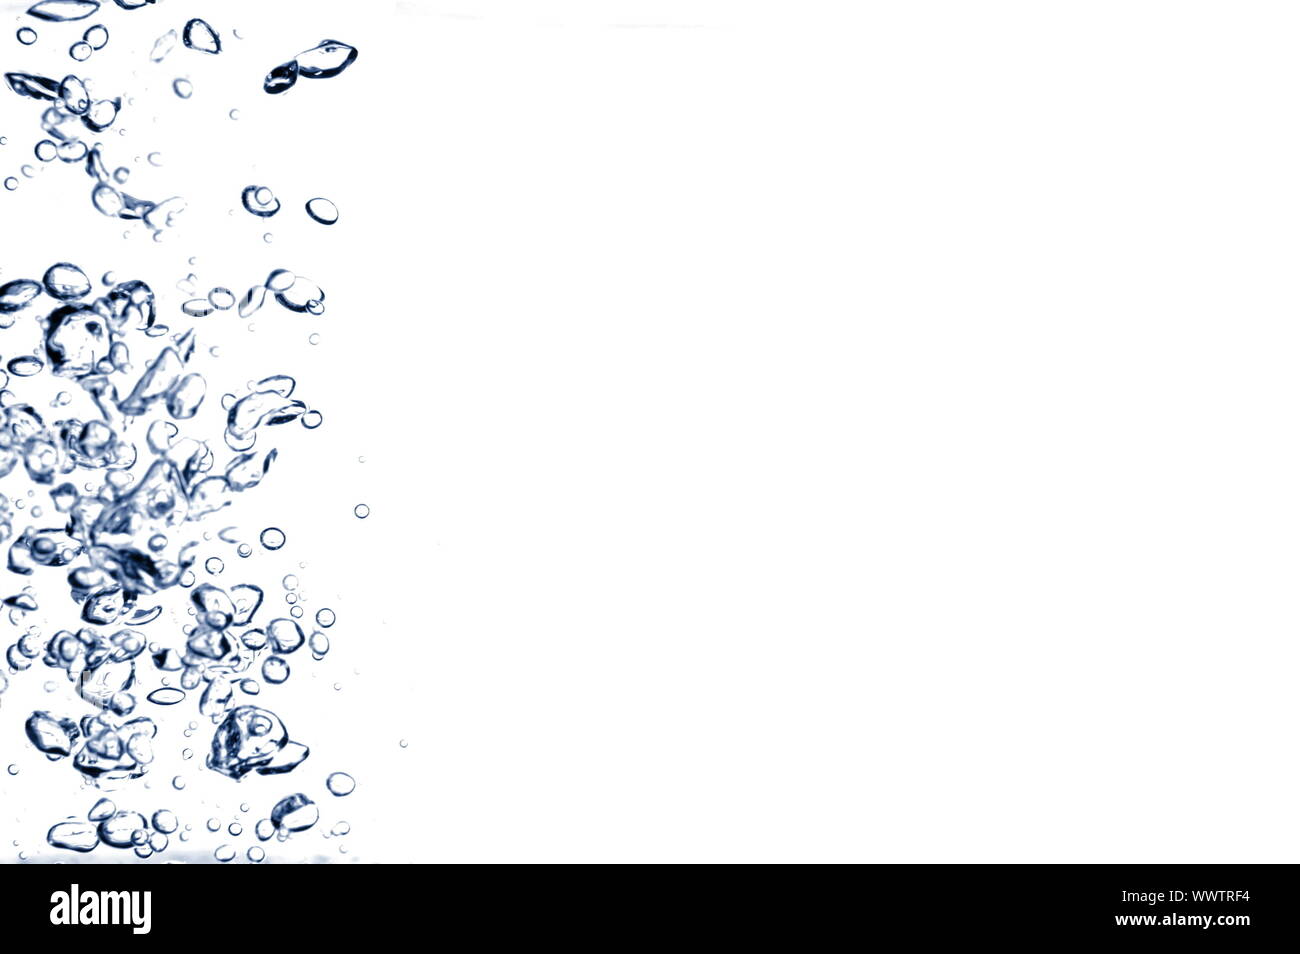 Luftblasen in Wasser auf weißem Hintergrund Stockfoto